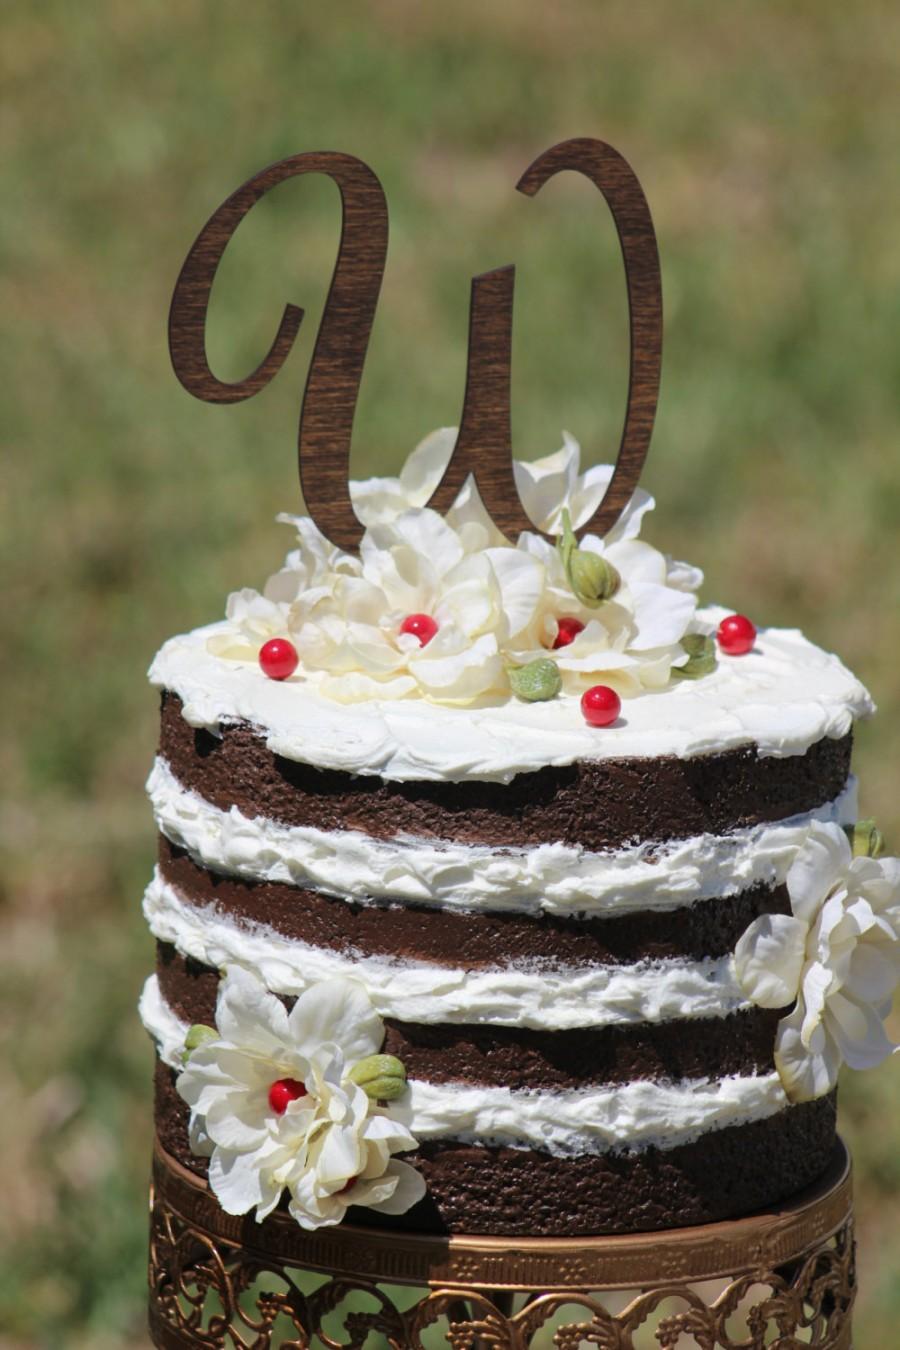 Hochzeit - Monogram Wedding Cake topper - Wooden cake topper - Personalized Cake topper